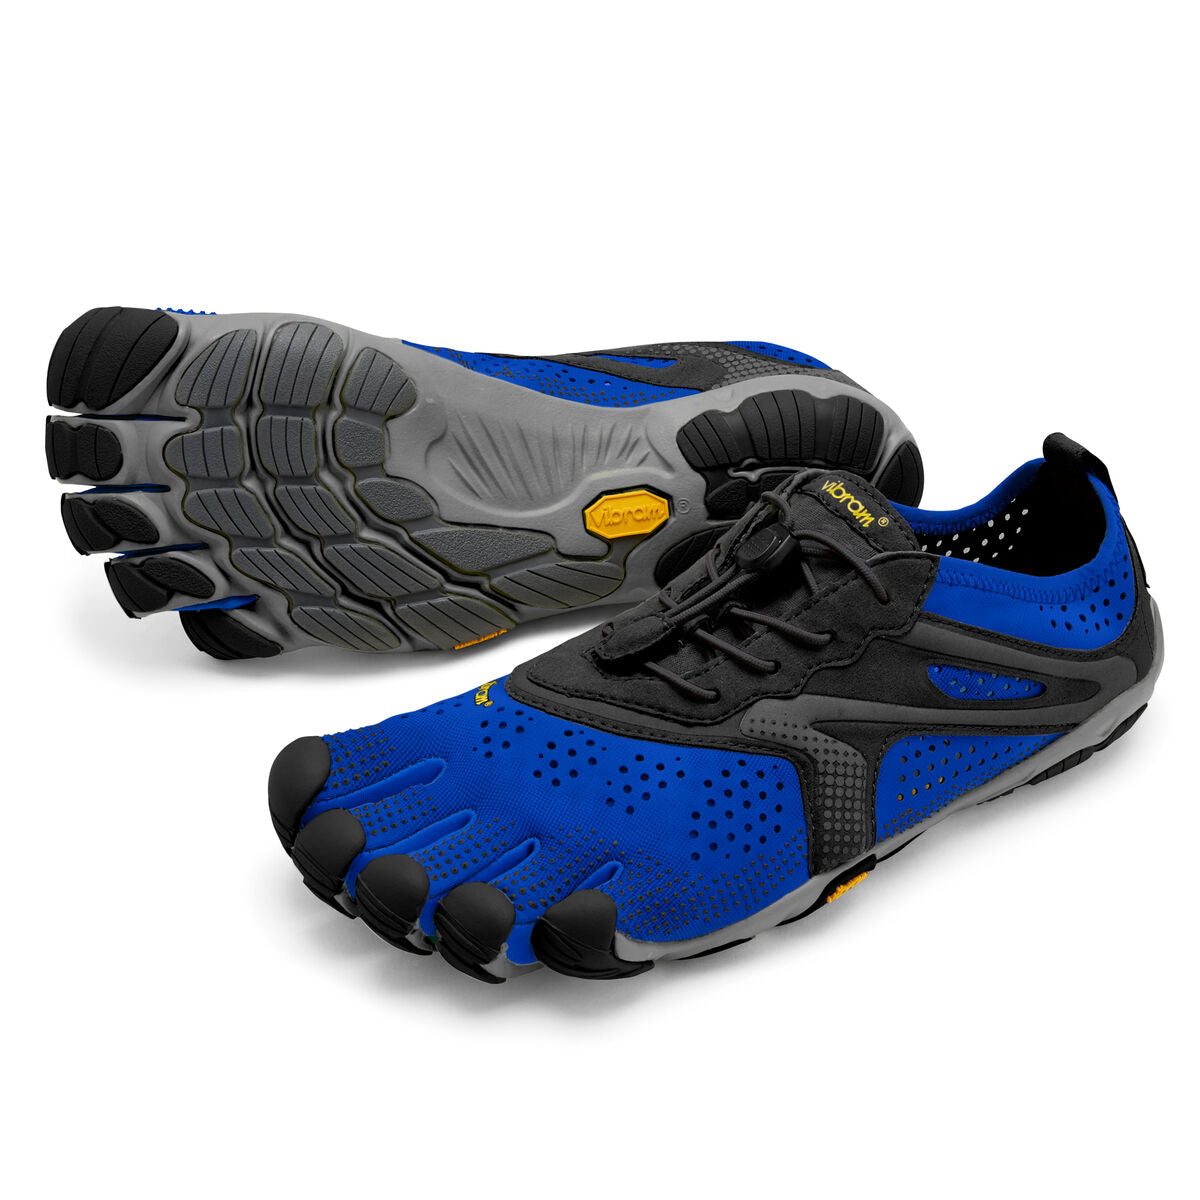 Men's Vibram Five Fingers V-Run Running Shoe in Blue/Black from the front